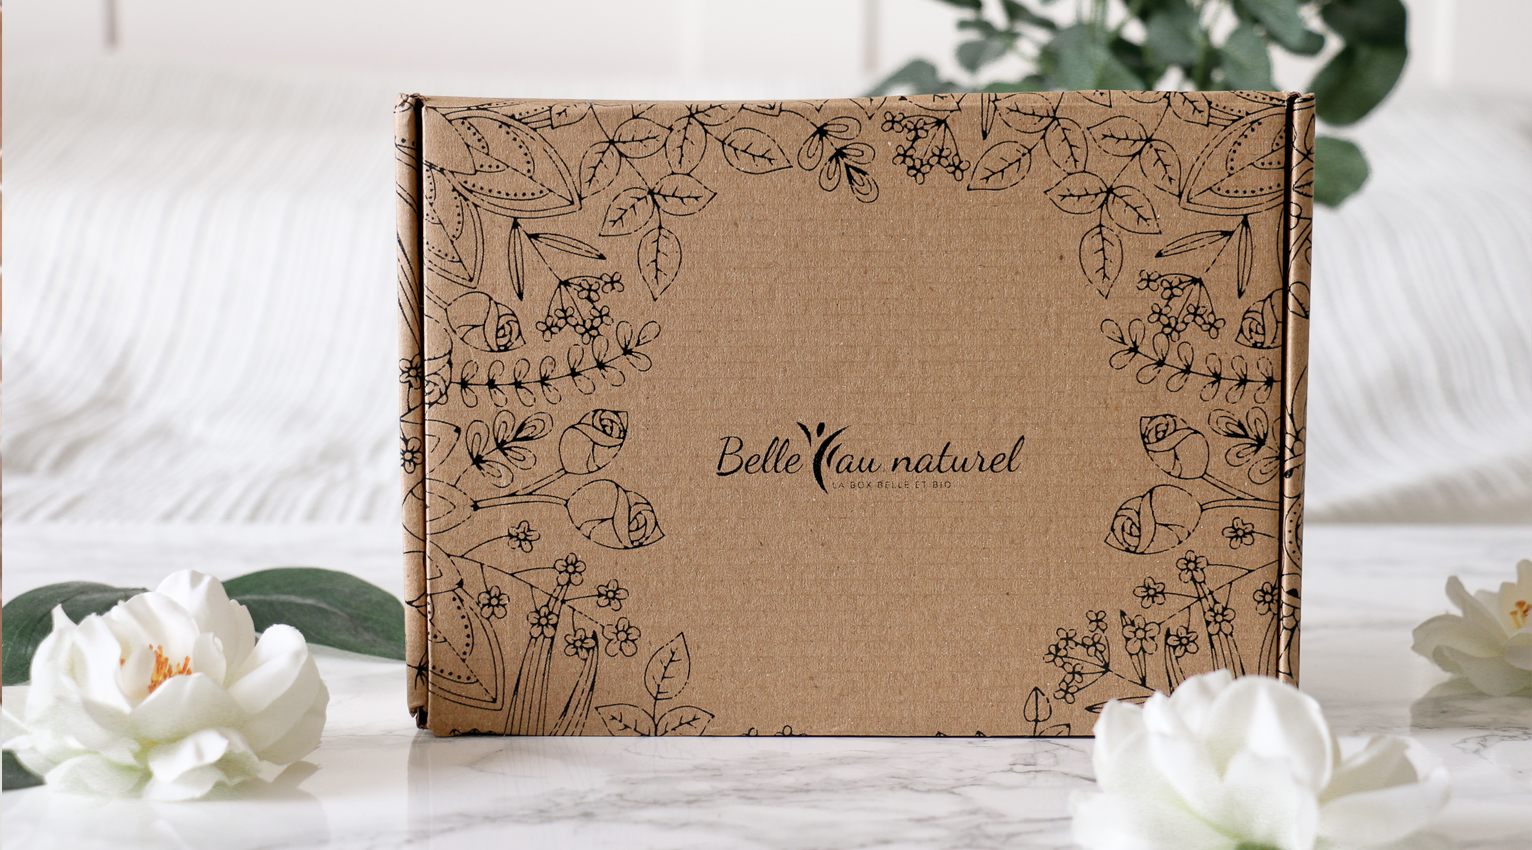 Belle au naturel - vegan - beauty- box